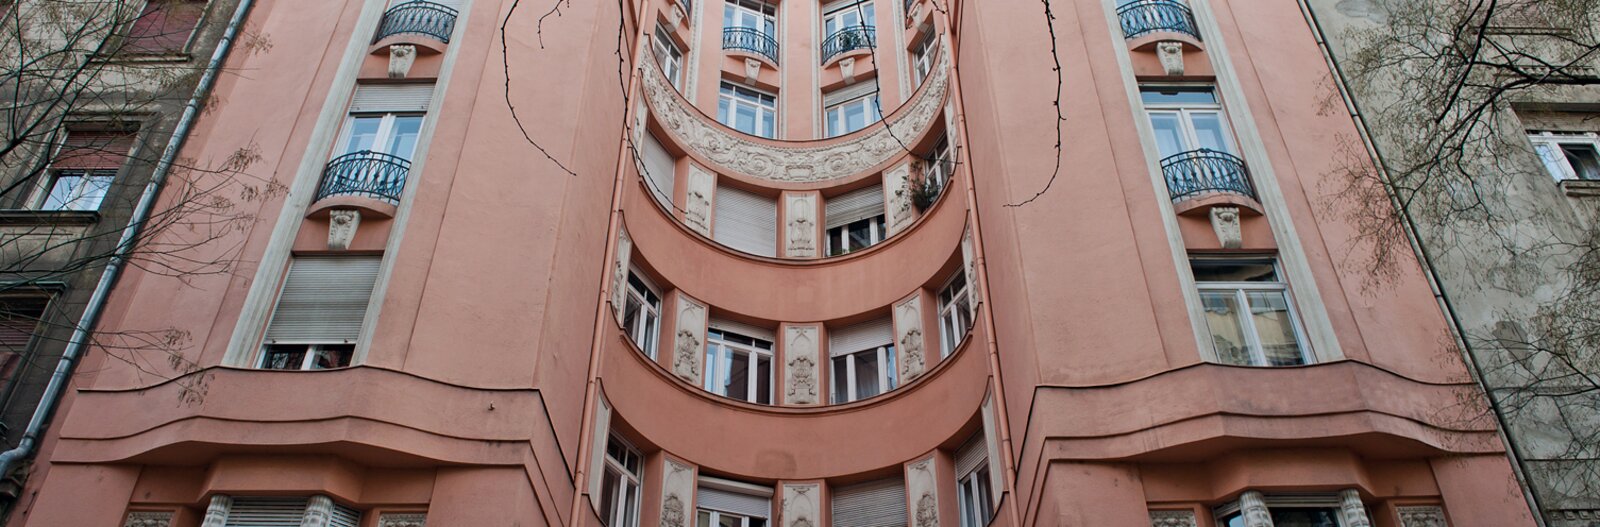 Budapest100: Miről mesélnek a százéves házak? – monumentális homlokzatok nyomában